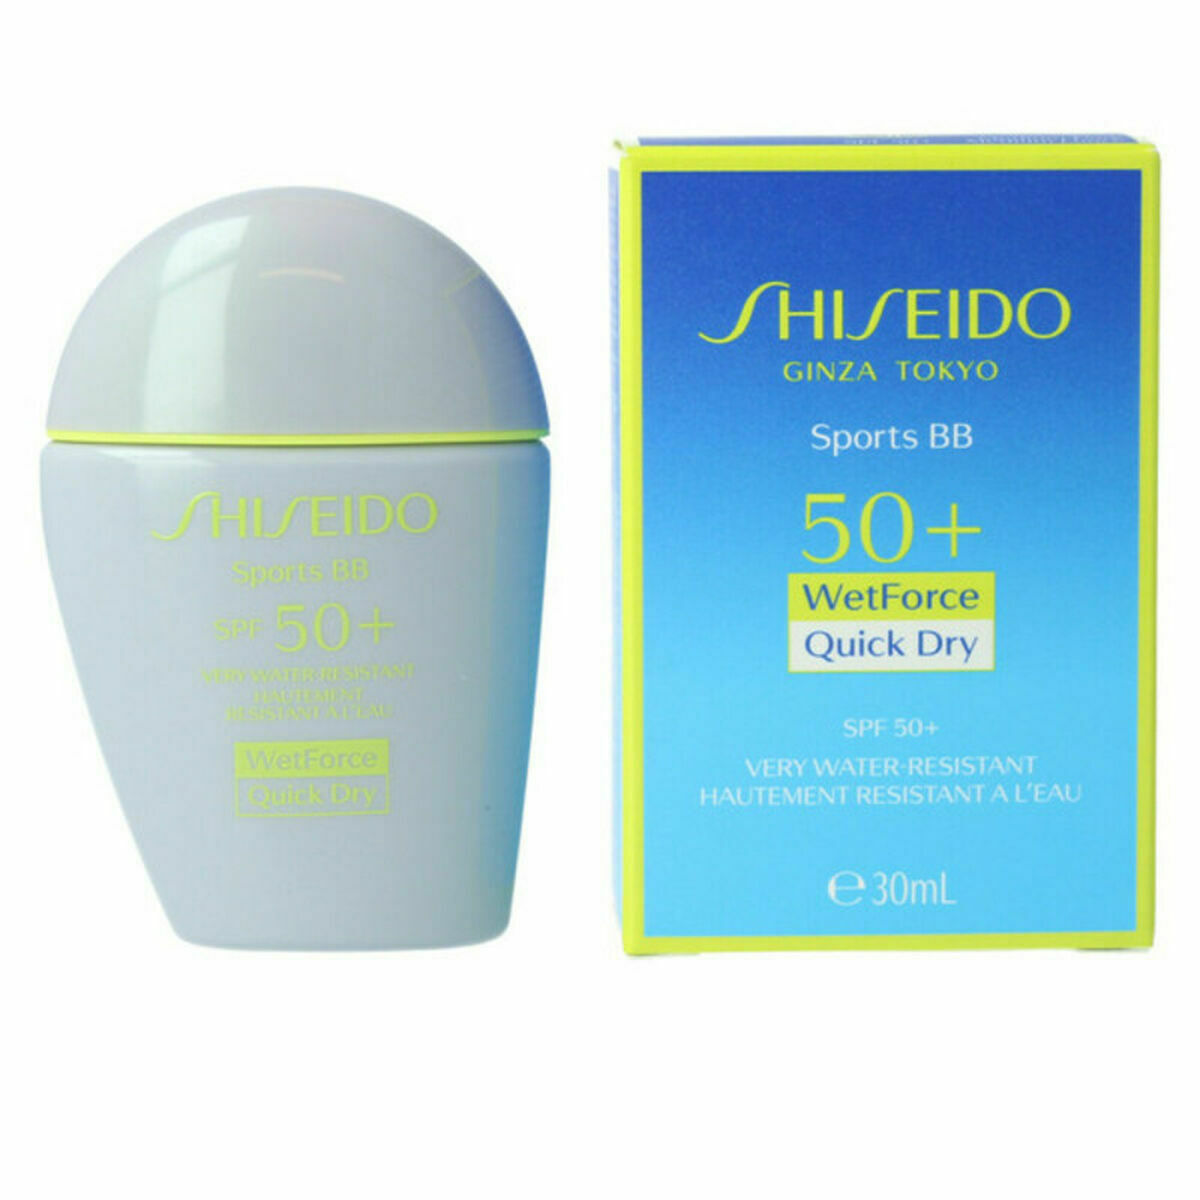 Protezione solare con colore shiseido sport bb spf50+ tono medio (30 ml)